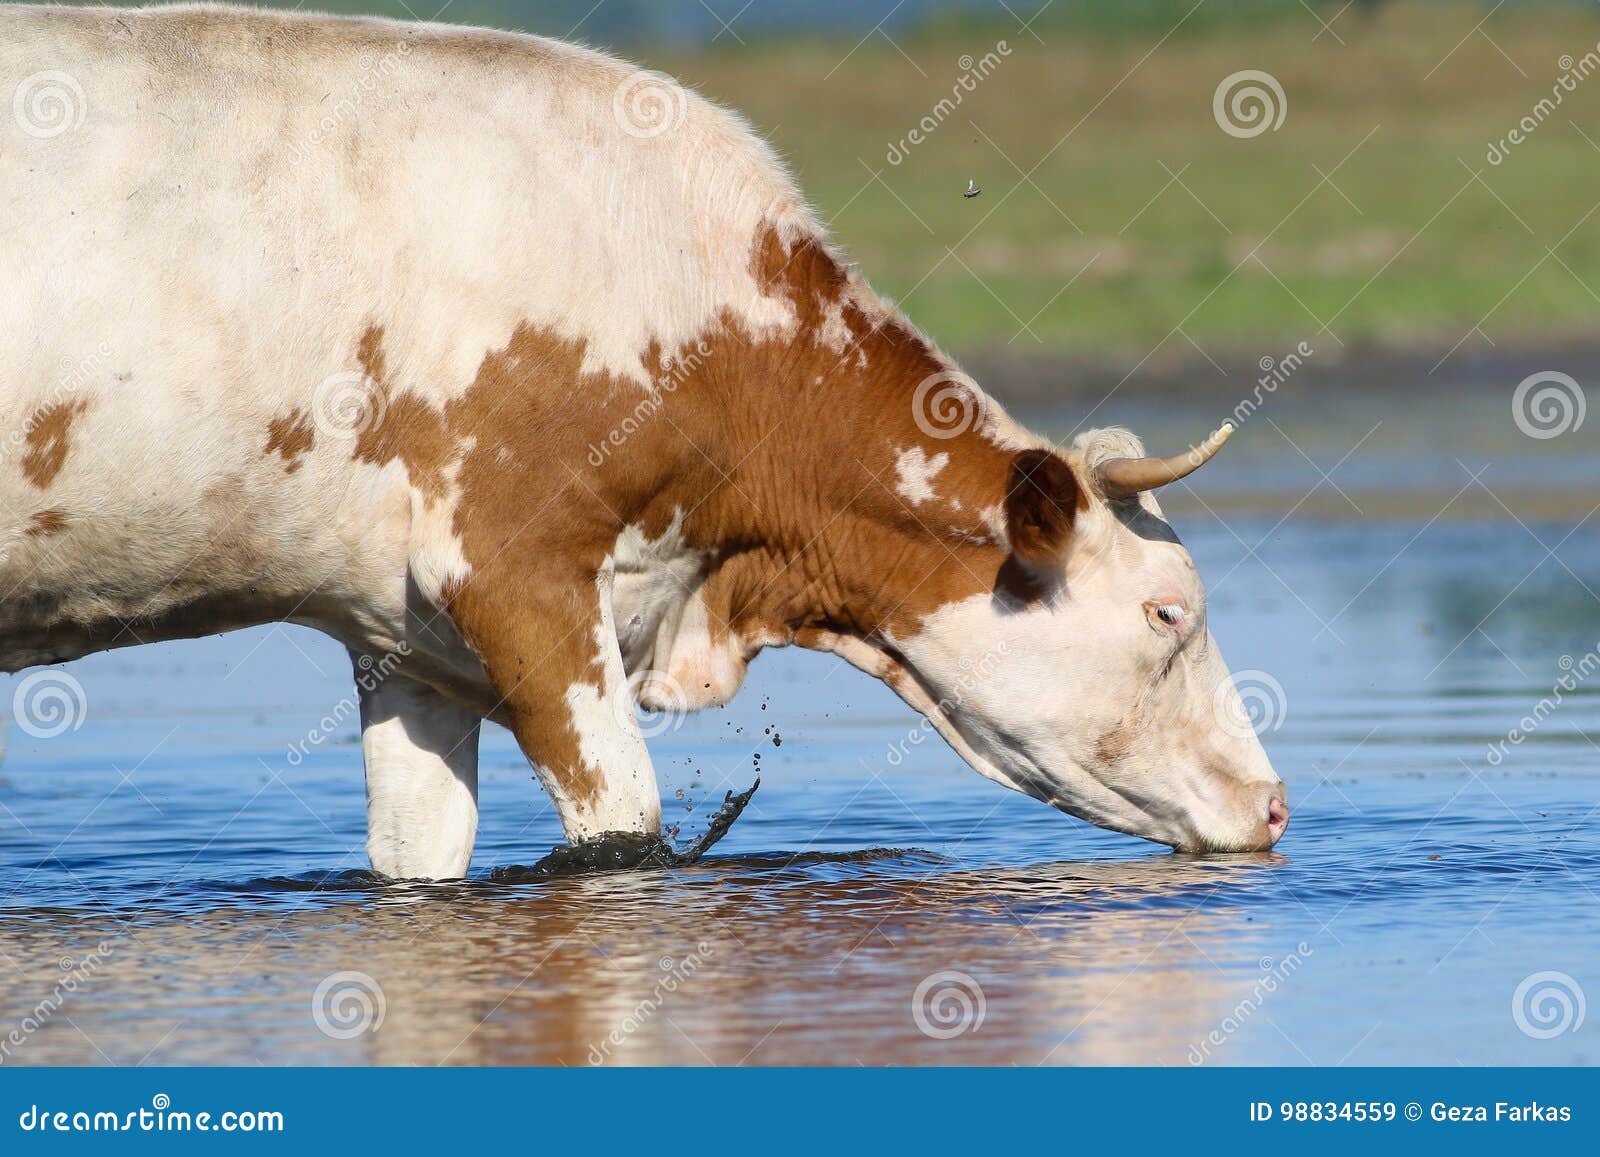 Корова плохо пьет. Корова в воде. Корова пьет воду из реки. Корова пьет воду. Корова пьет.